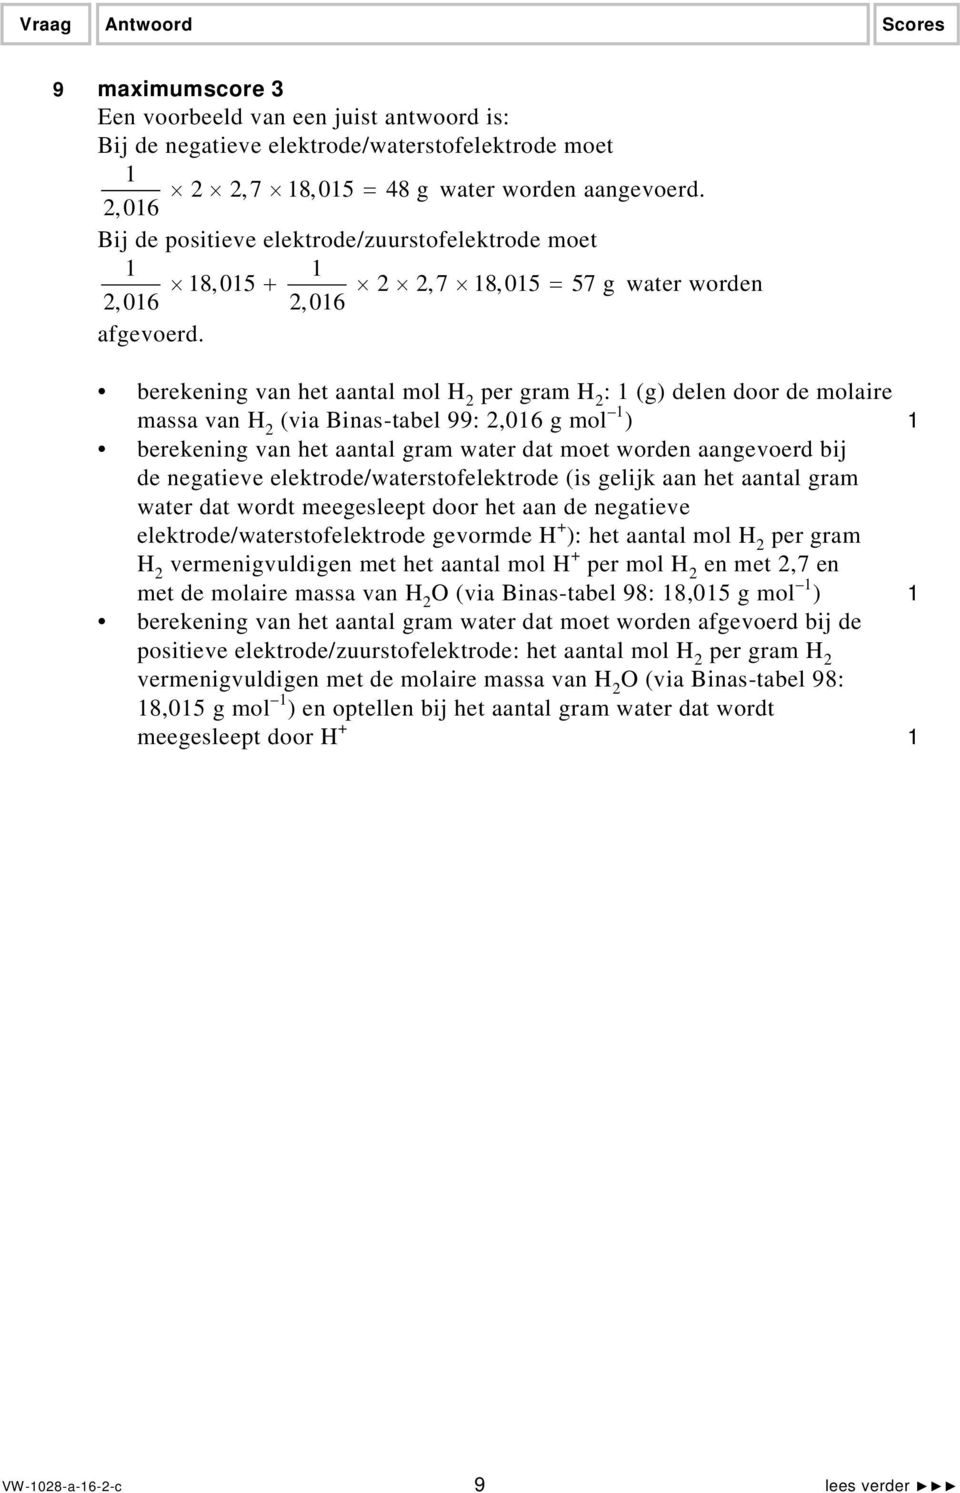 berekening van het aantal mol H 2 per gram H 2 : 1 (g) delen door de molaire massa van H 2 (via Binas-tabel 99: 2,016 g mol 1 ) 1 berekening van het aantal gram water dat moet worden aangevoerd bij